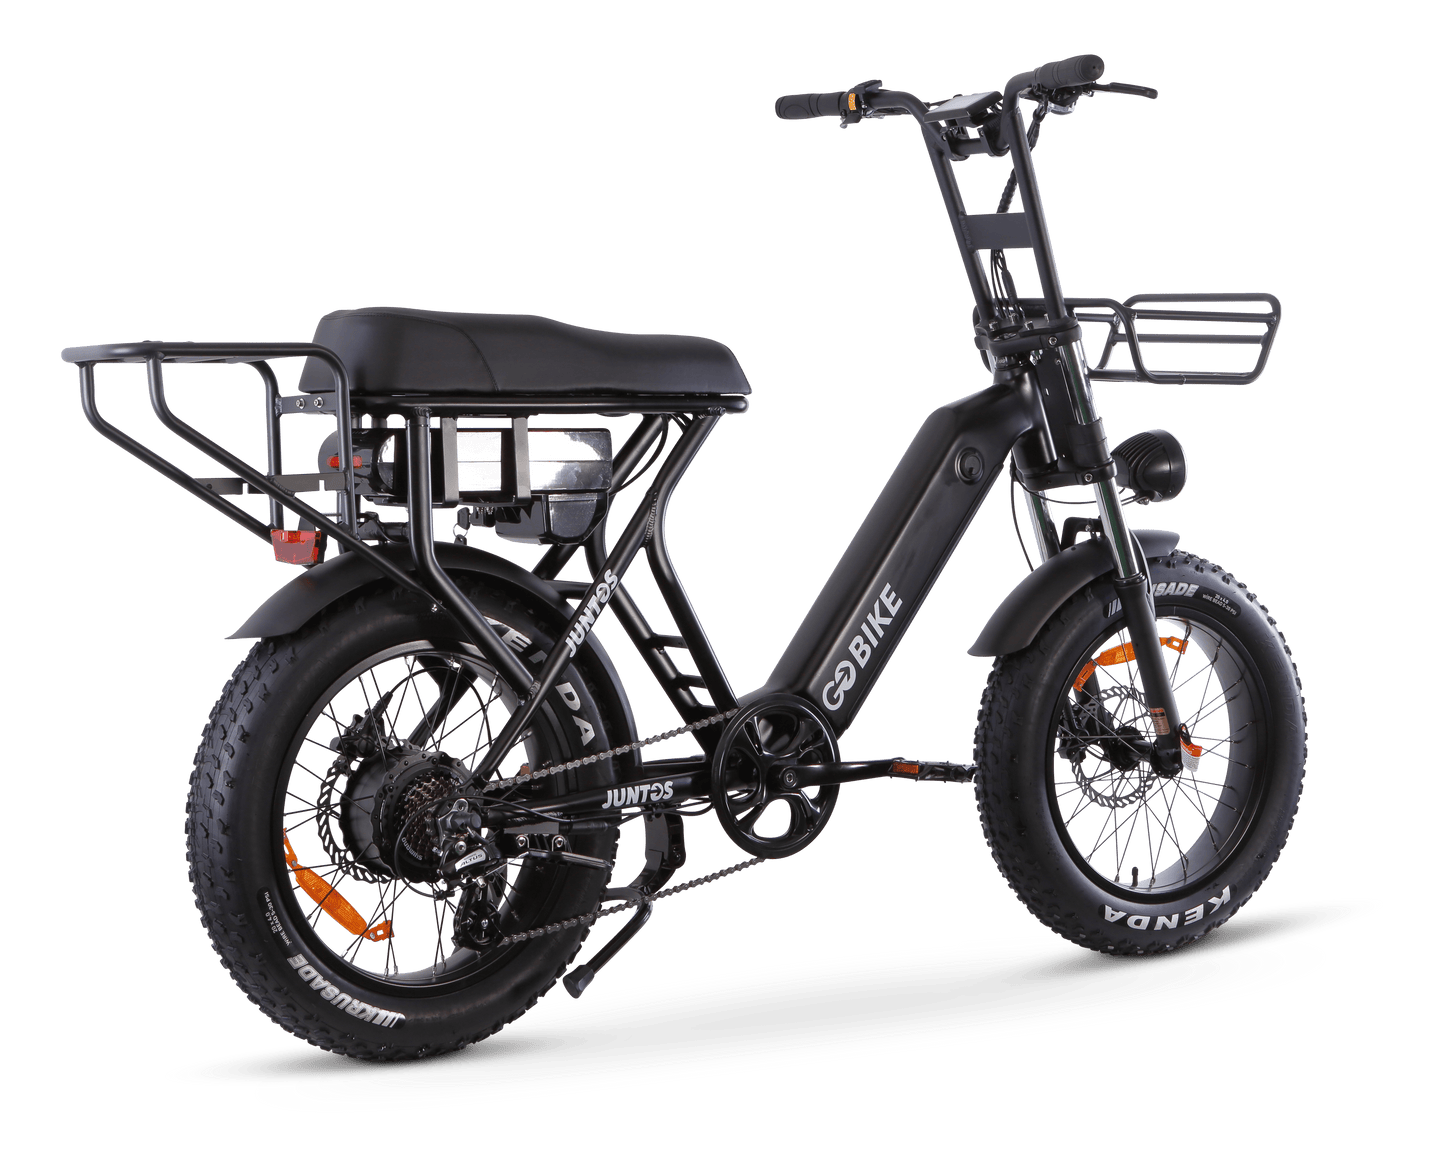 GOBIKE JUNTOS Step - Through Lightweight 750W Electric Bike